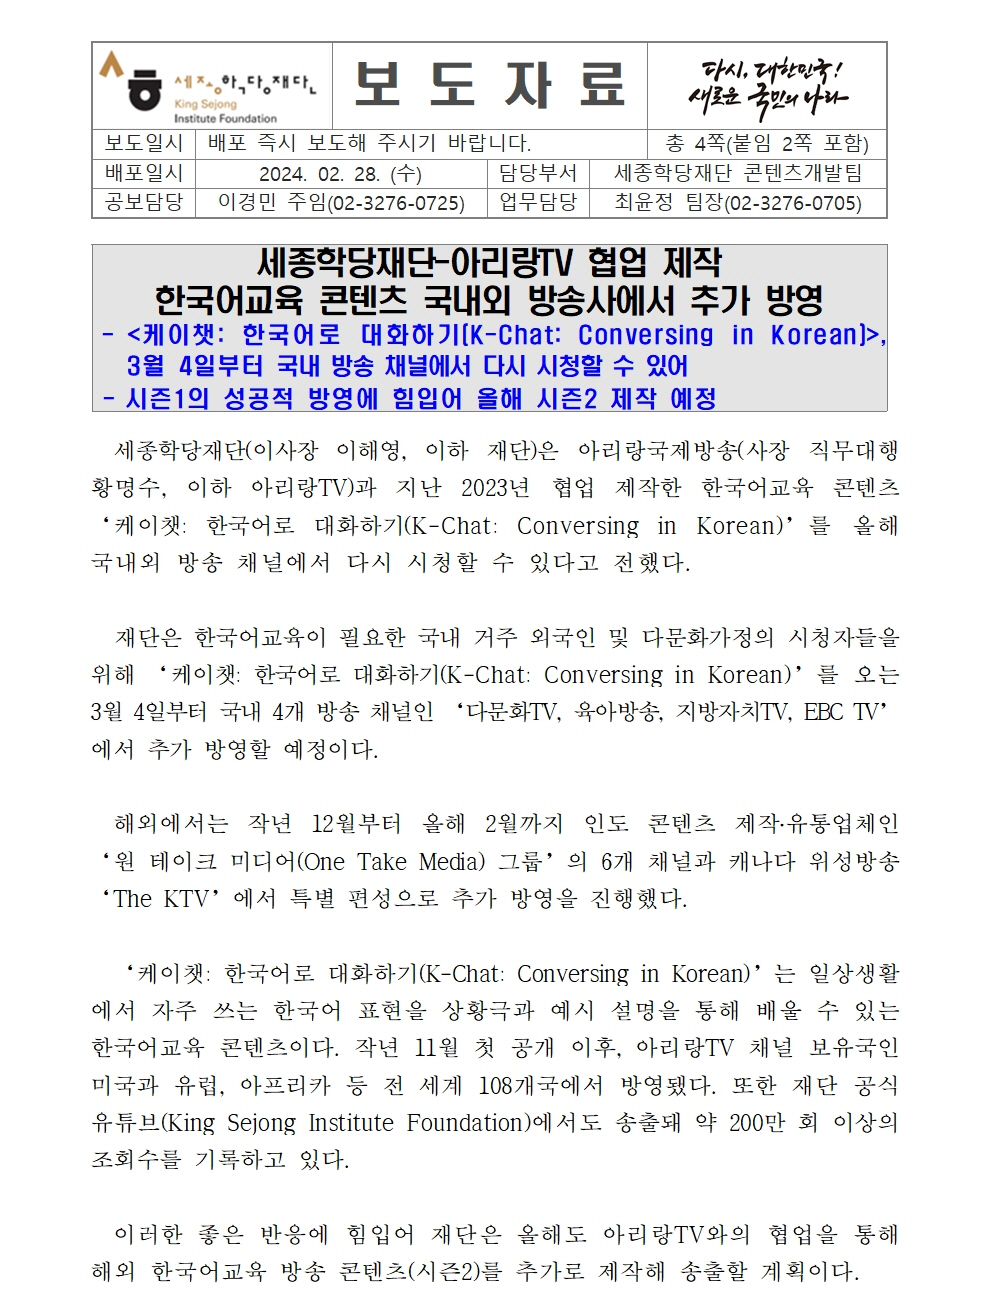 세종학당재단 아리랑TV 한국어교육 콘텐츠 국내외 방송사 추가 방영(보도자료)001